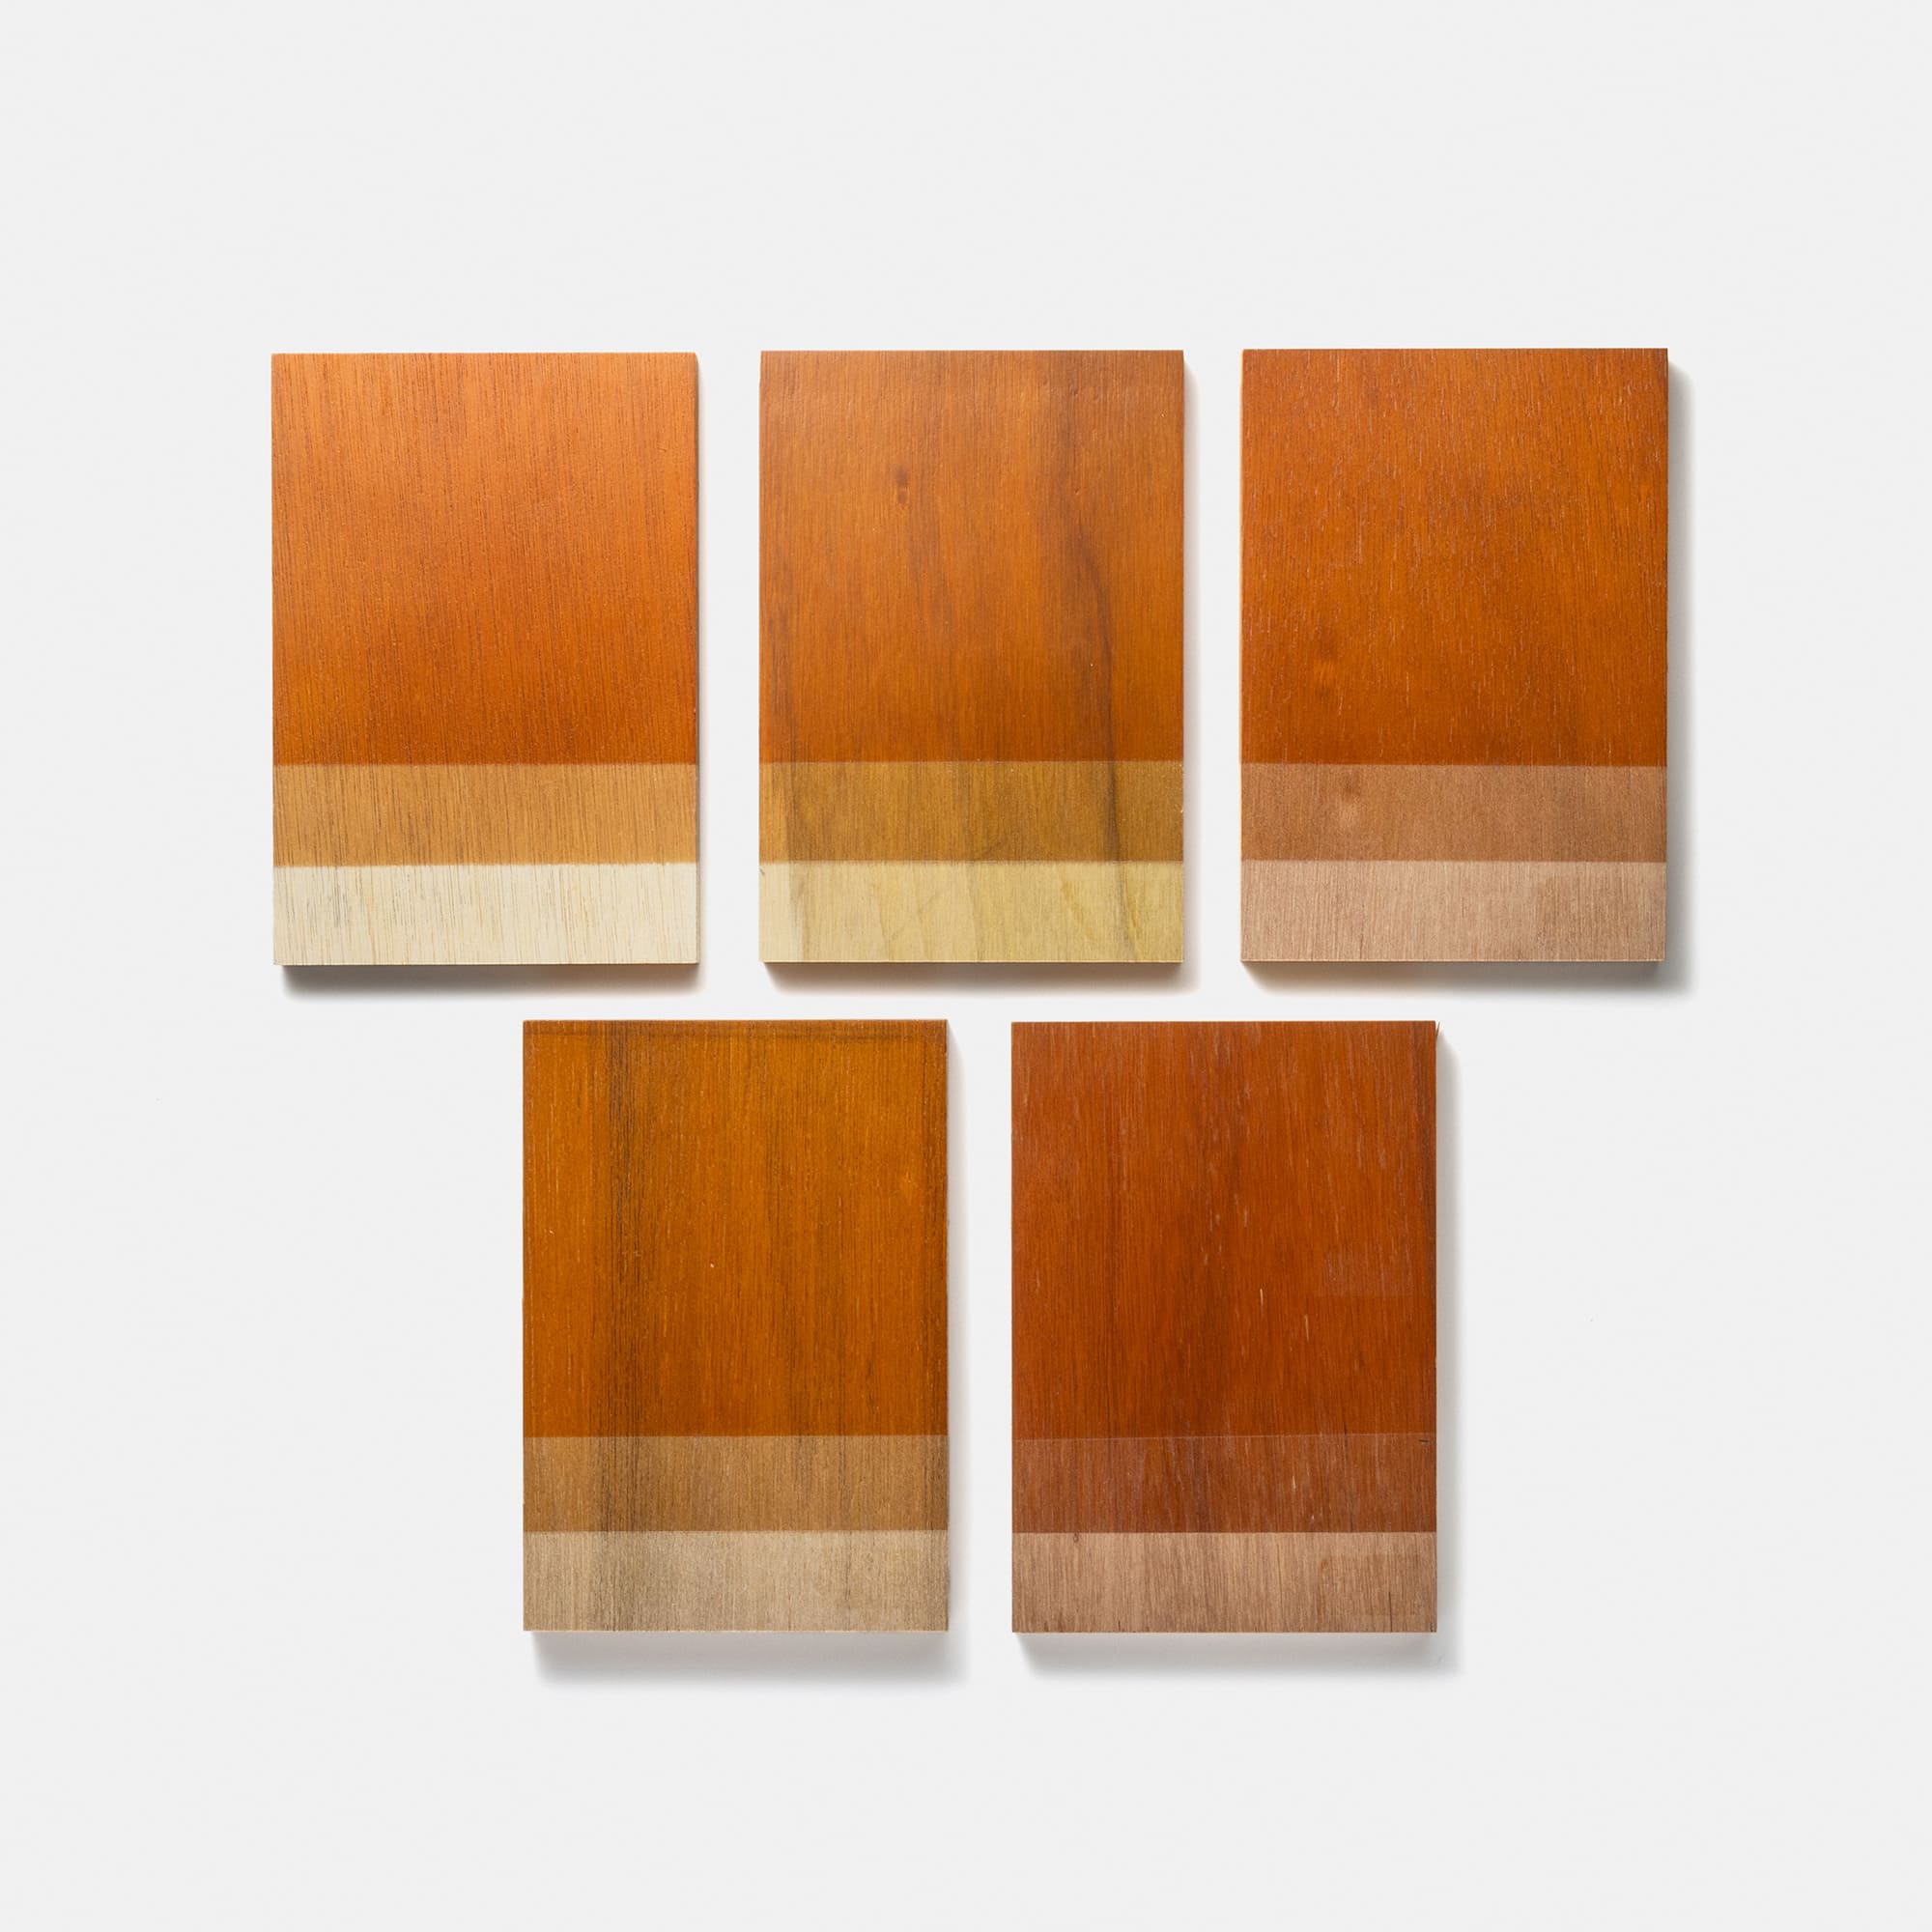 木製シェルビング 棚板 W600 PS-BK009-06-G289 ラワン合板は基材の色の幅があるため、下地の色に合わせて調色しています